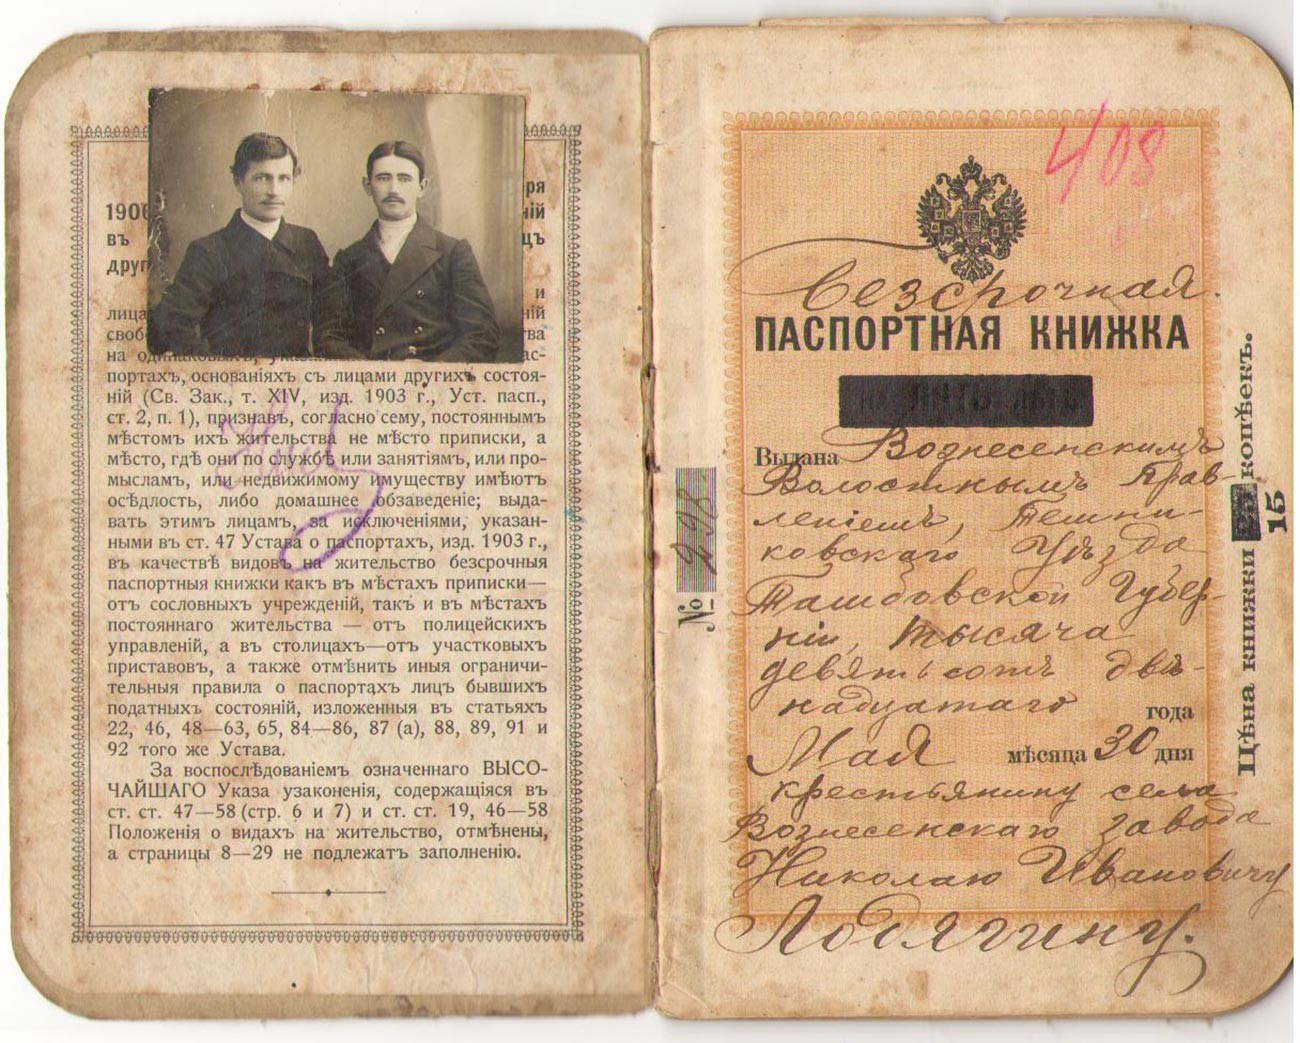 Un passaporto dell'Impero russo